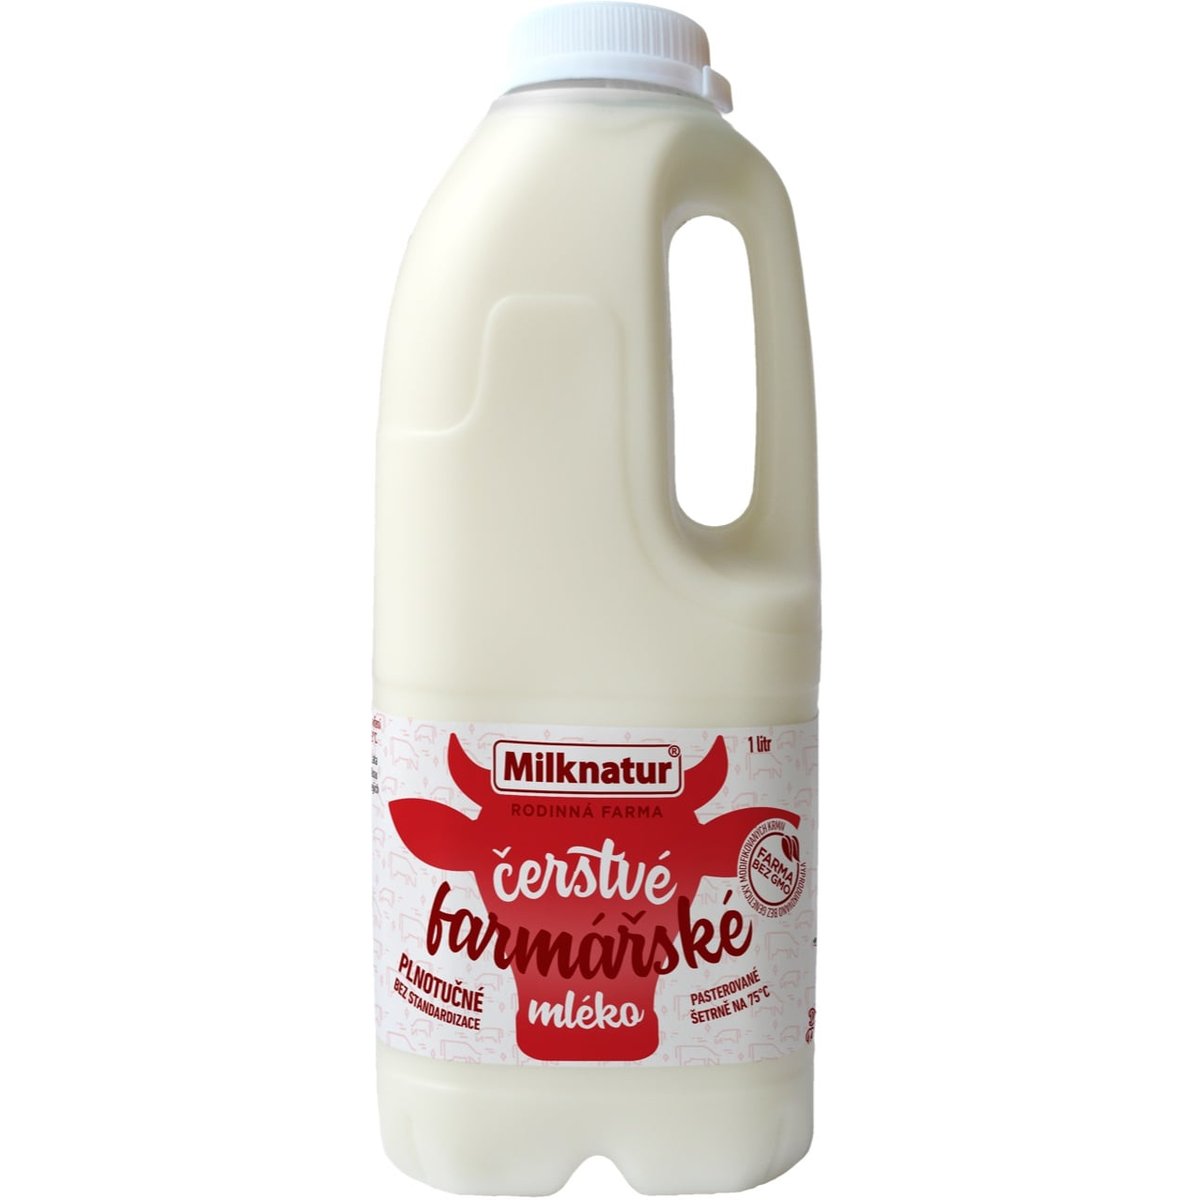 Milknatur Čerstvé mléko z farmy min. 3,8 % v akci